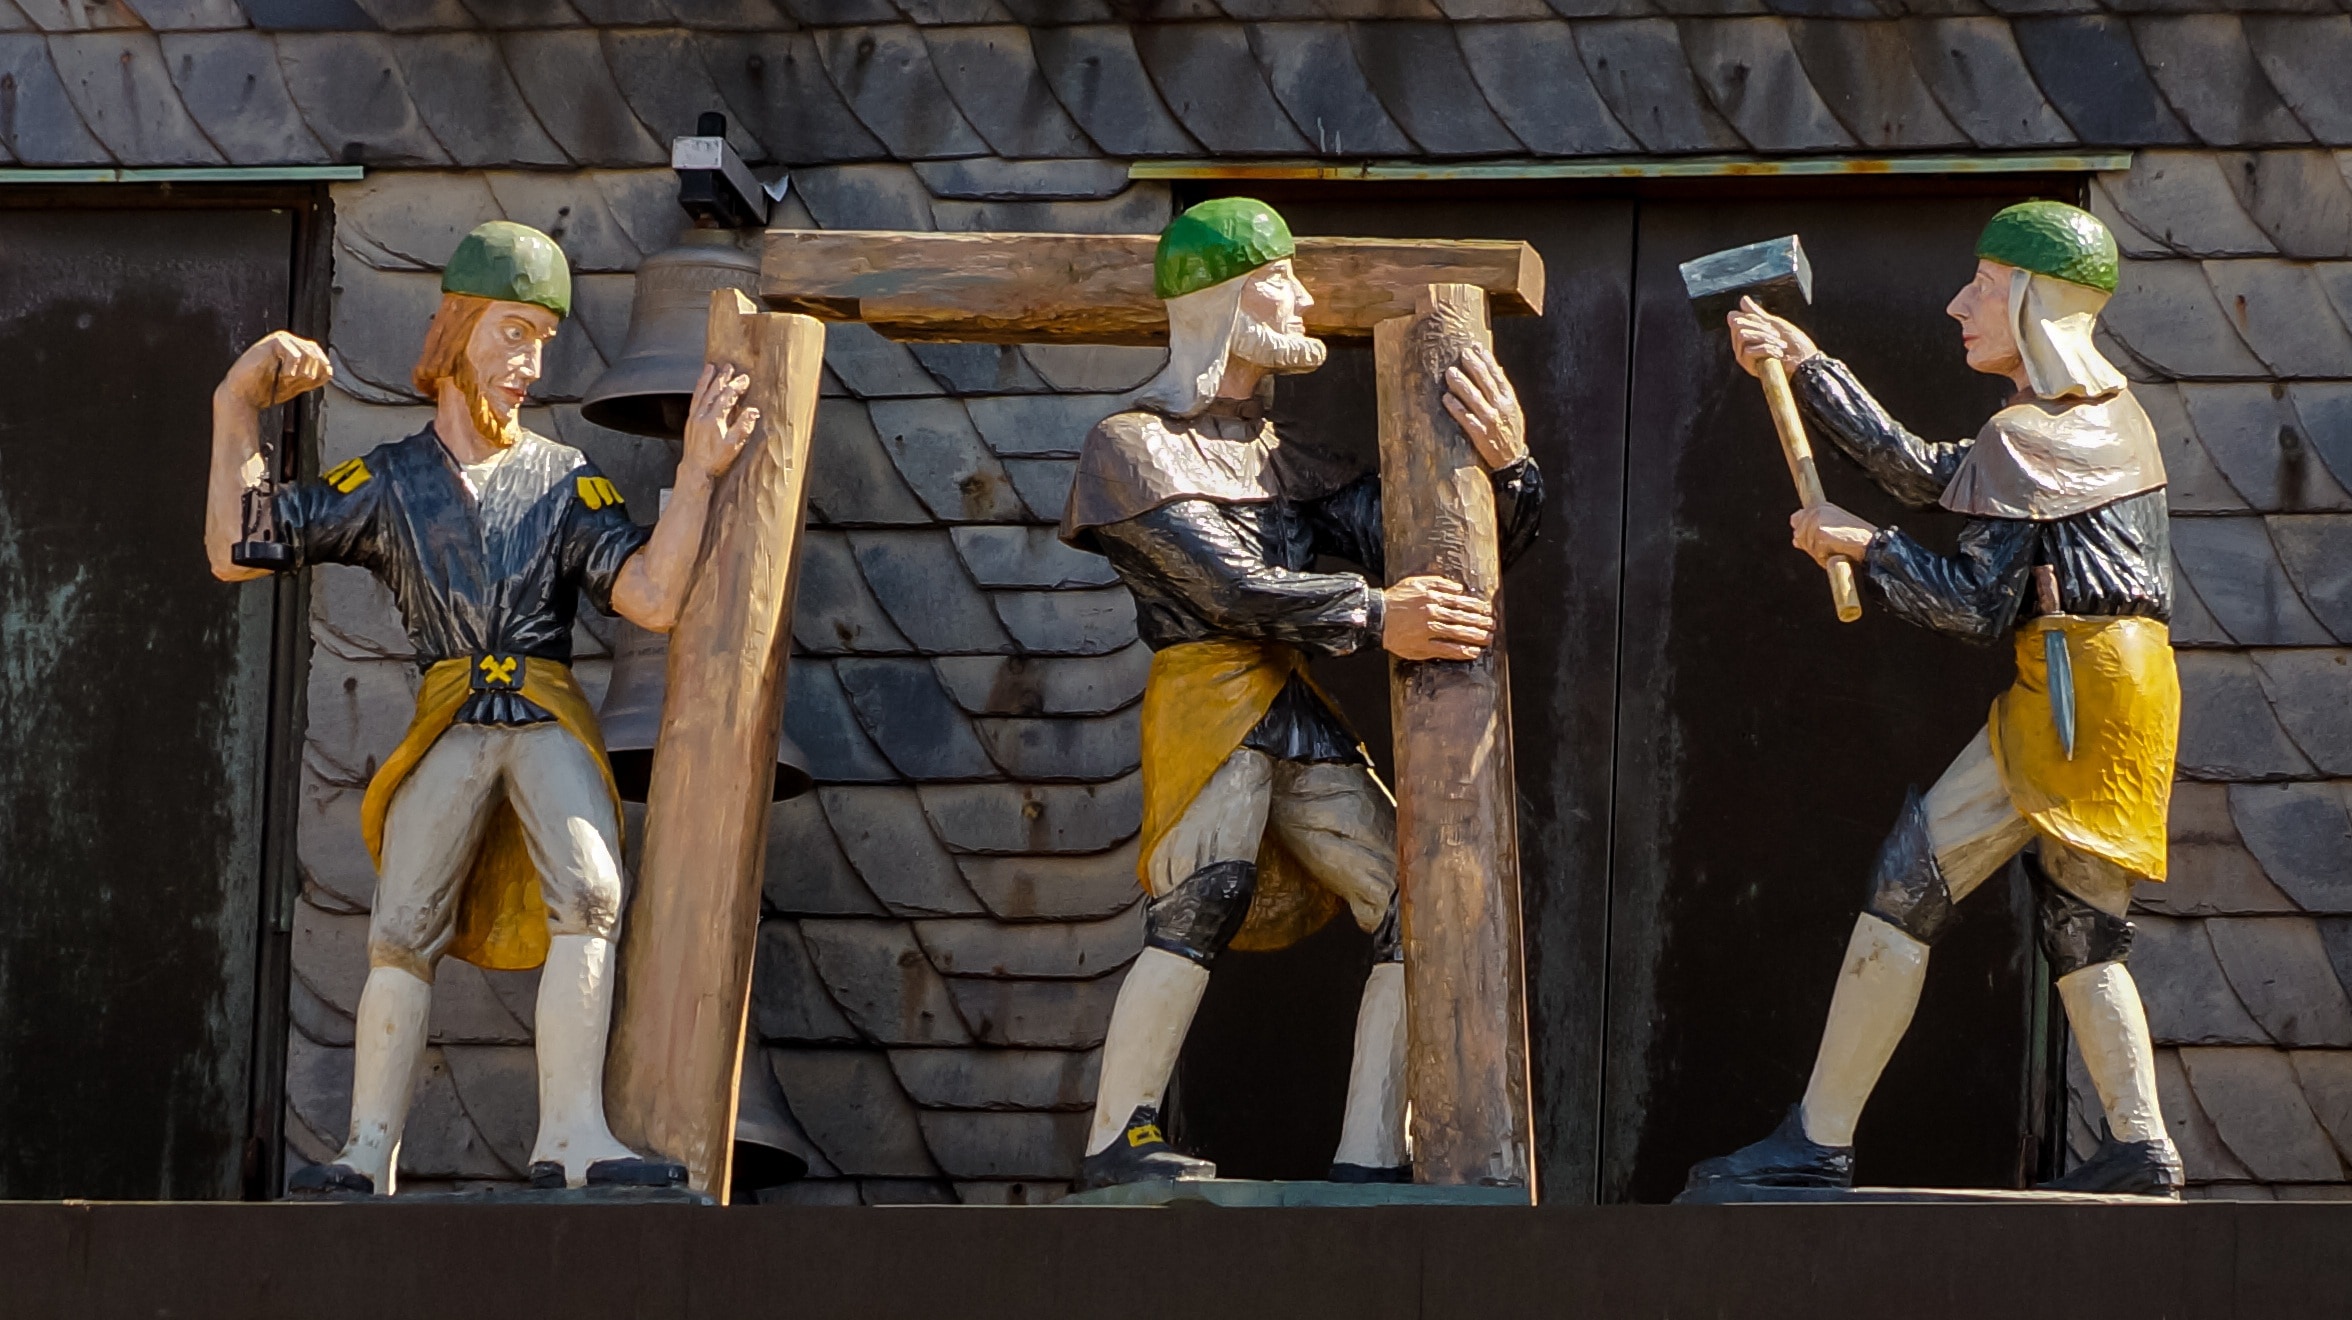 3 men working figurines